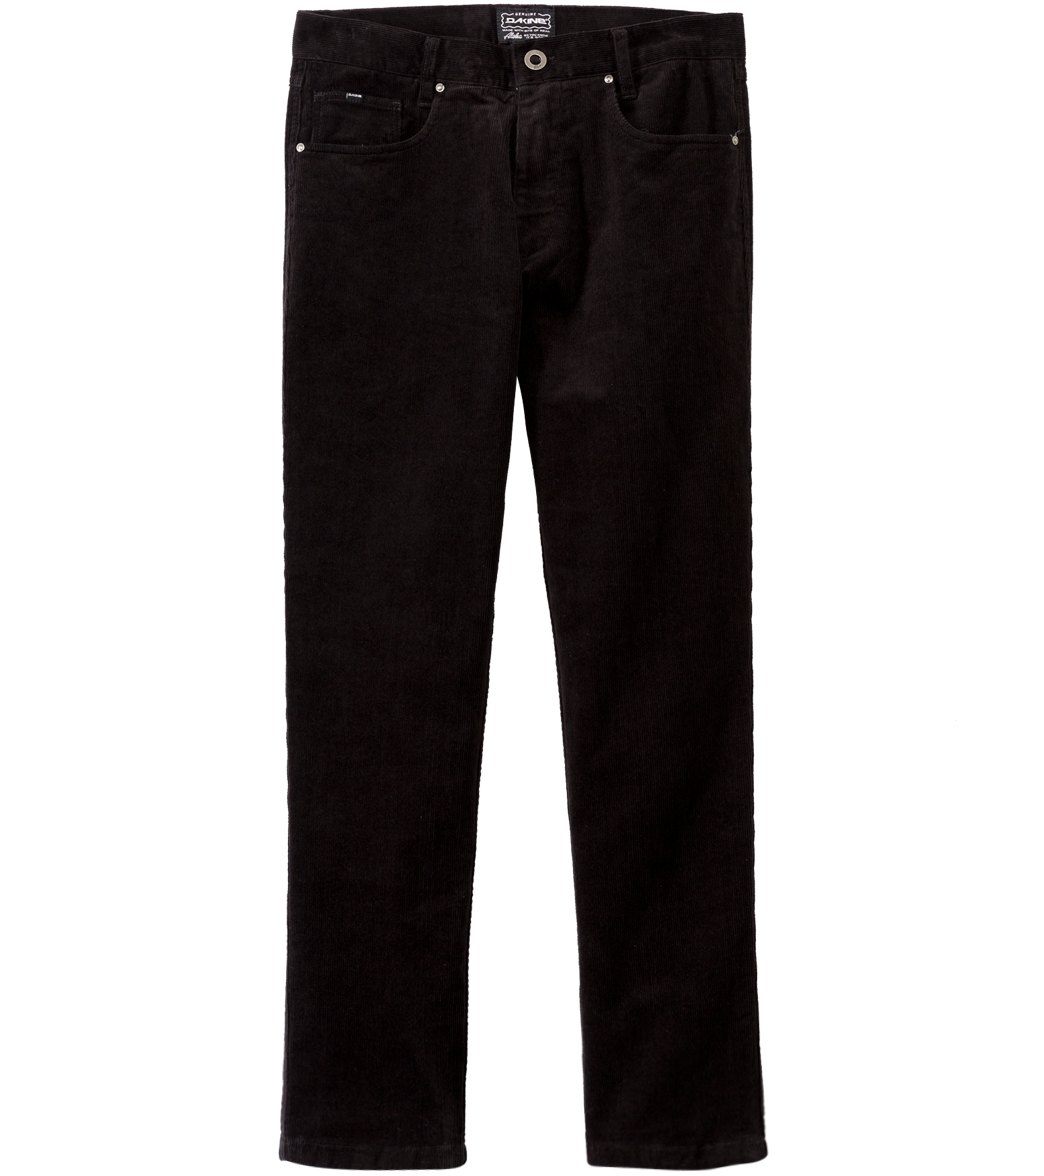 Dakine Men's Dylan Cord Pants - Black 28 Cotton - Swimoutlet.com